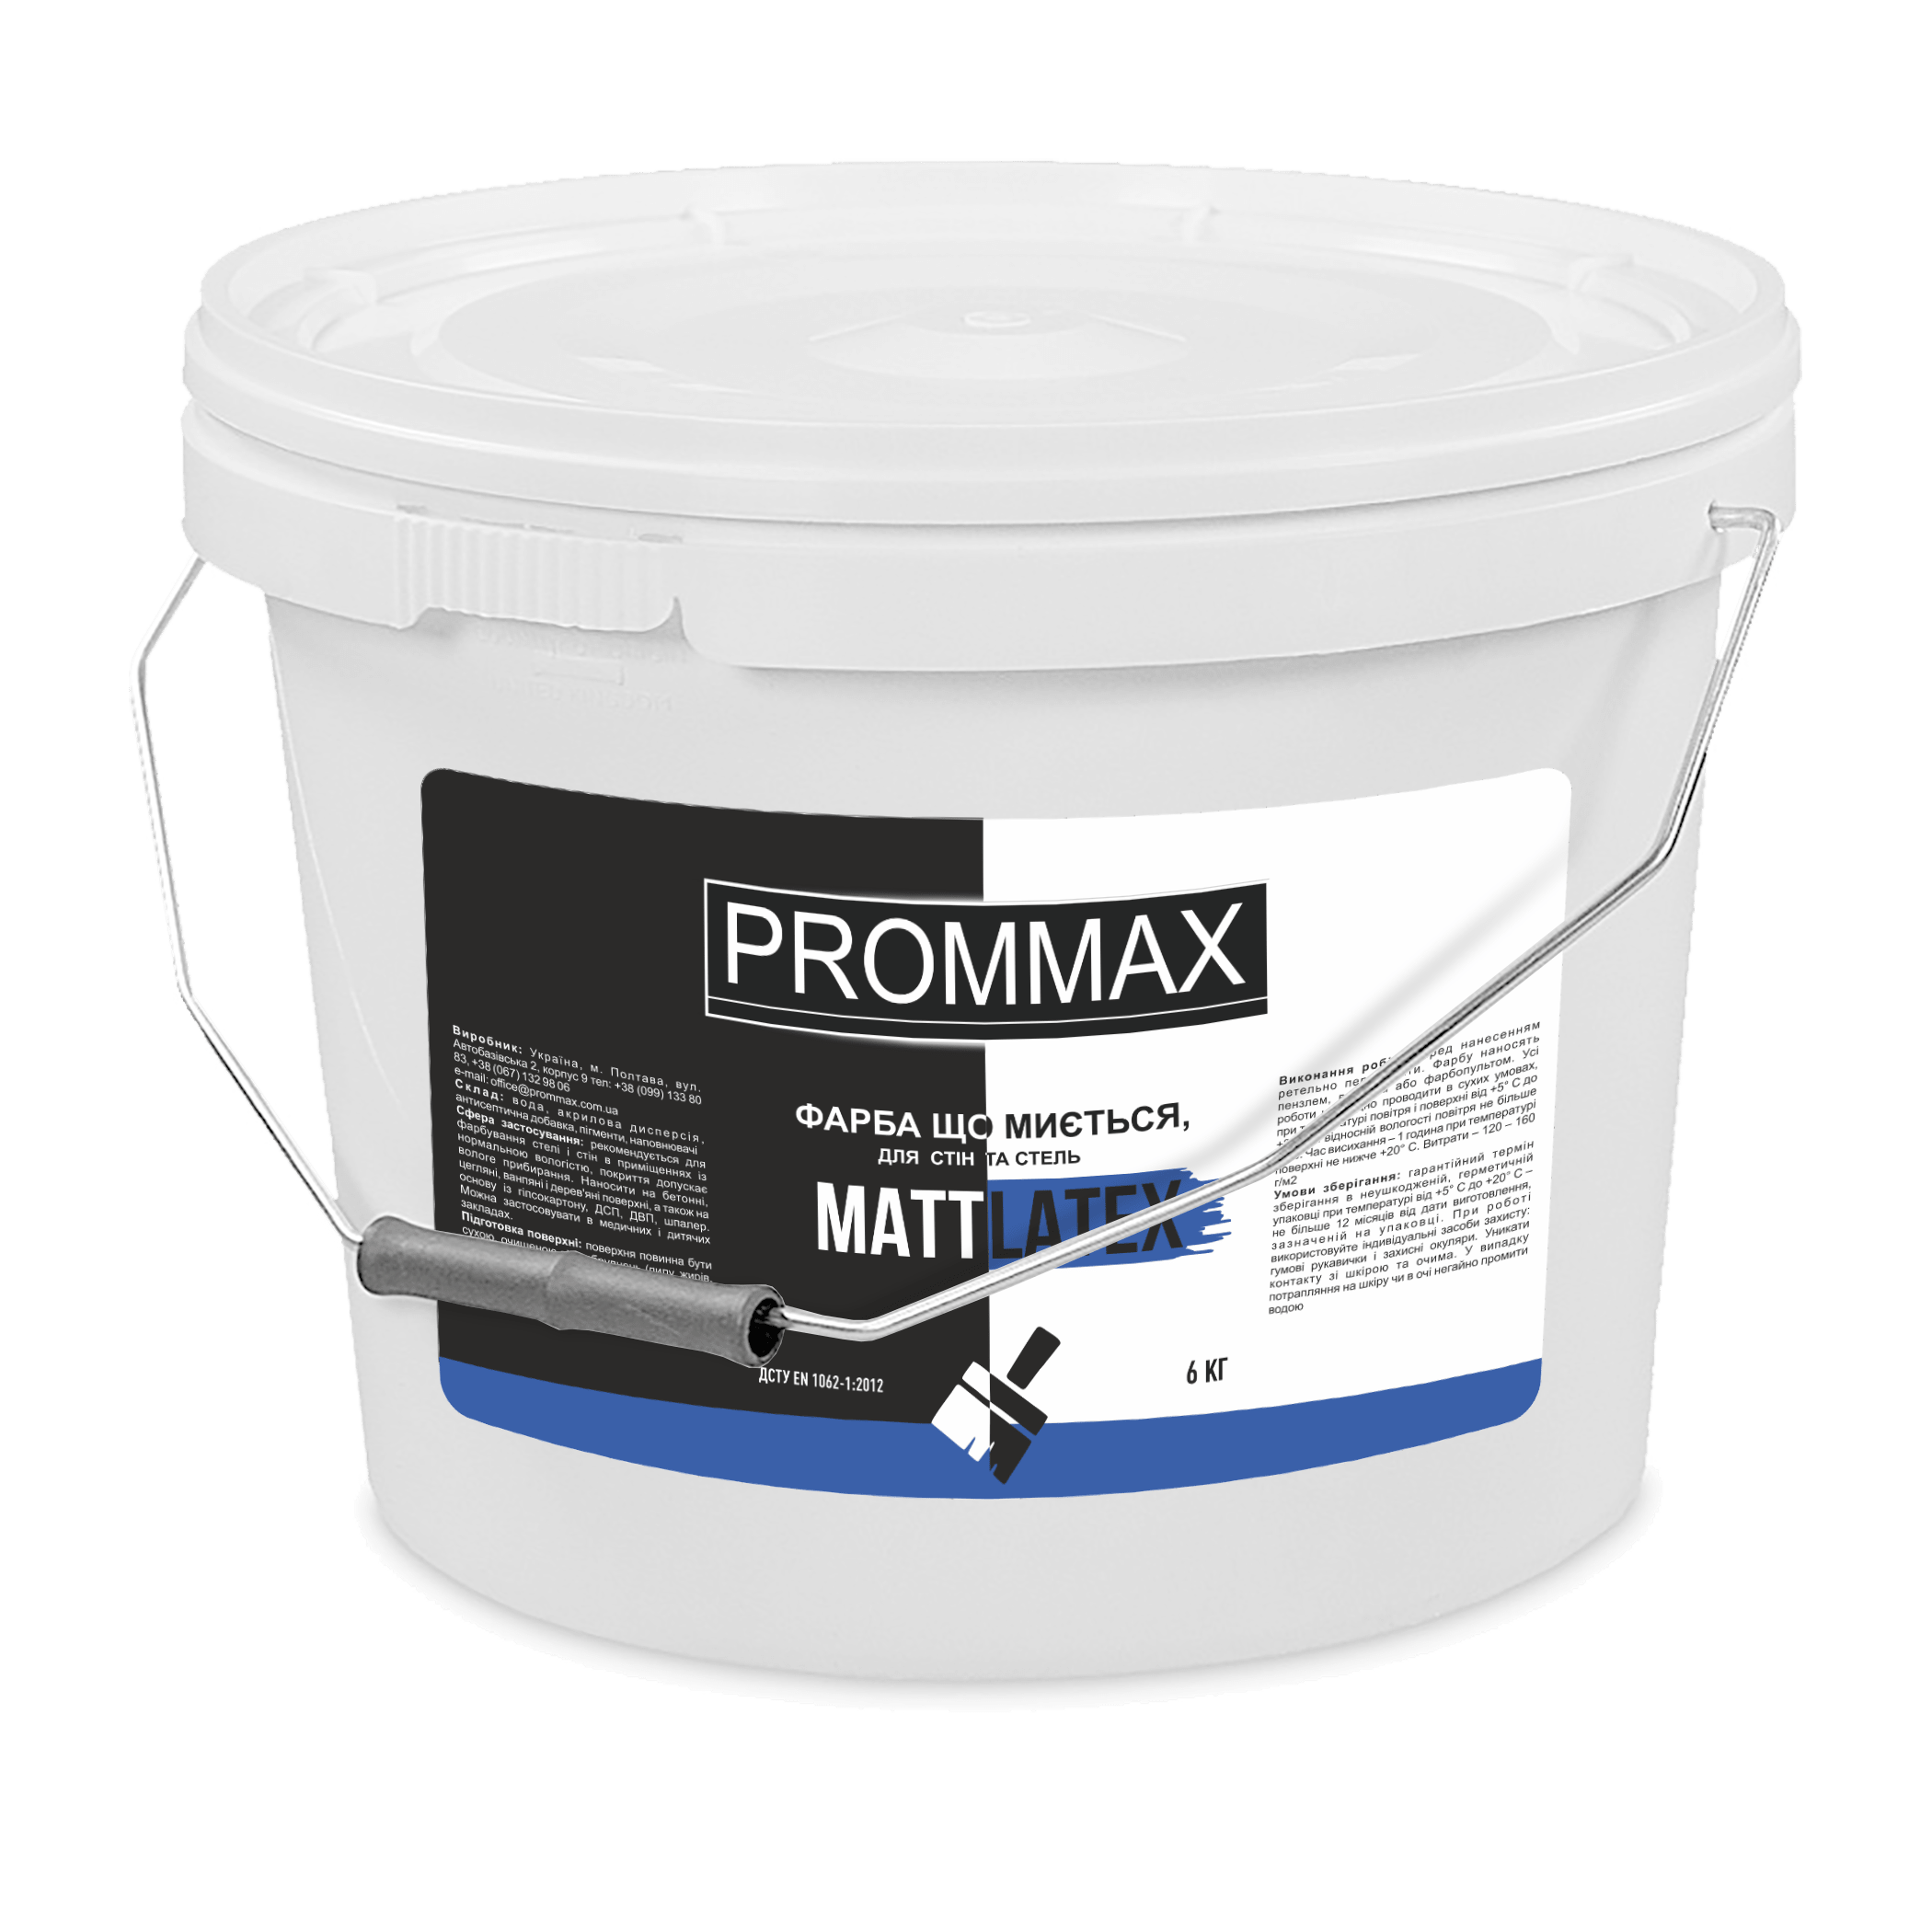 Моющаяся краска от лучшего производителя PROMMAX